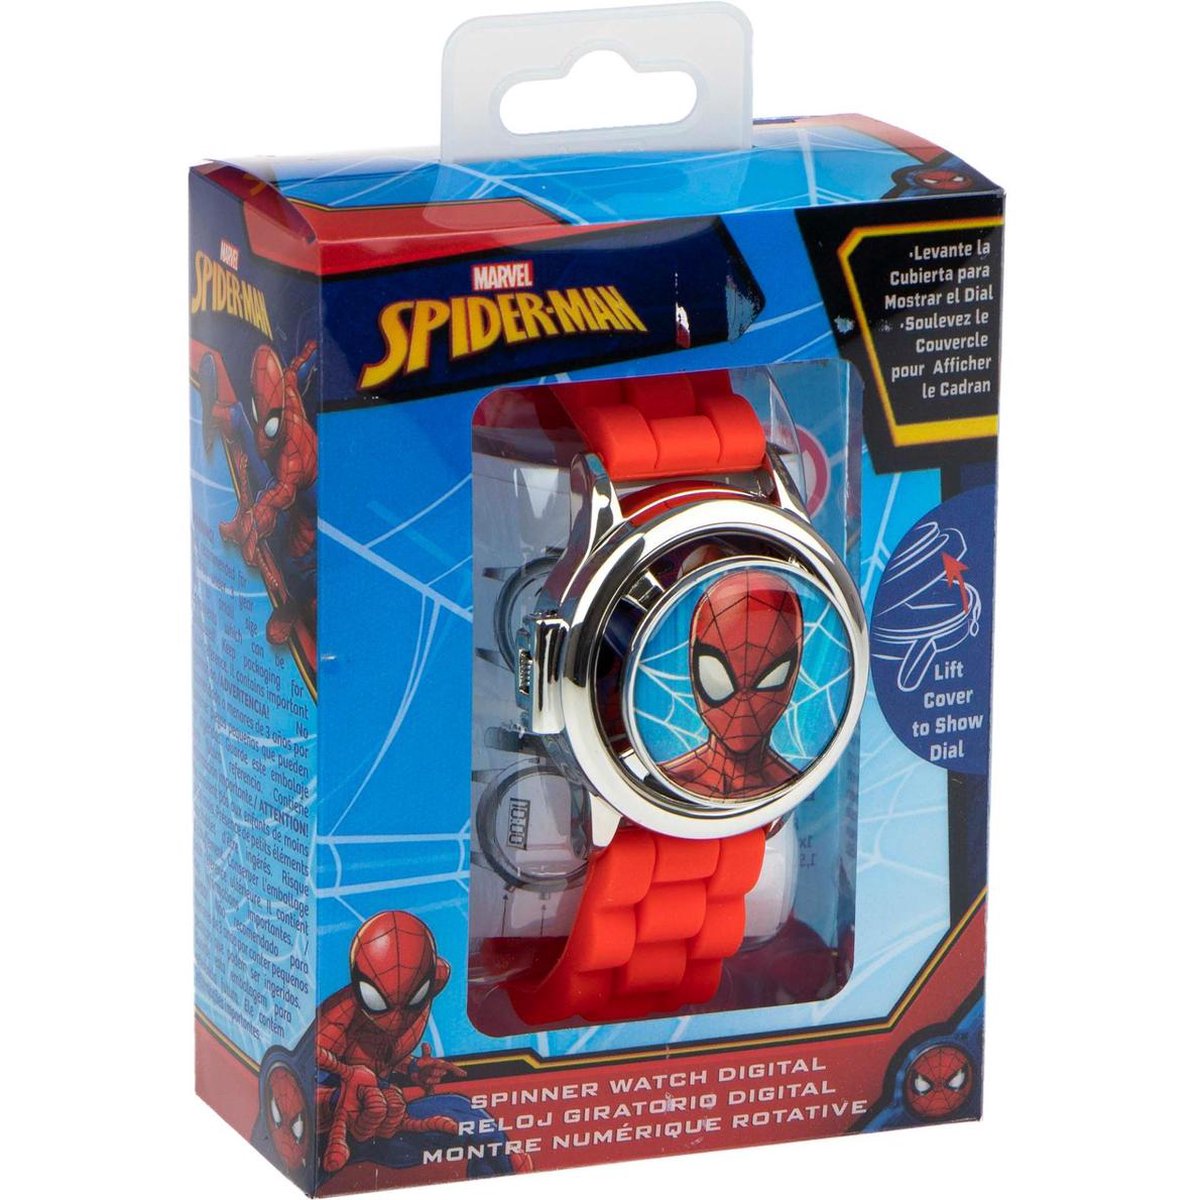 Montre numérique Spiderman